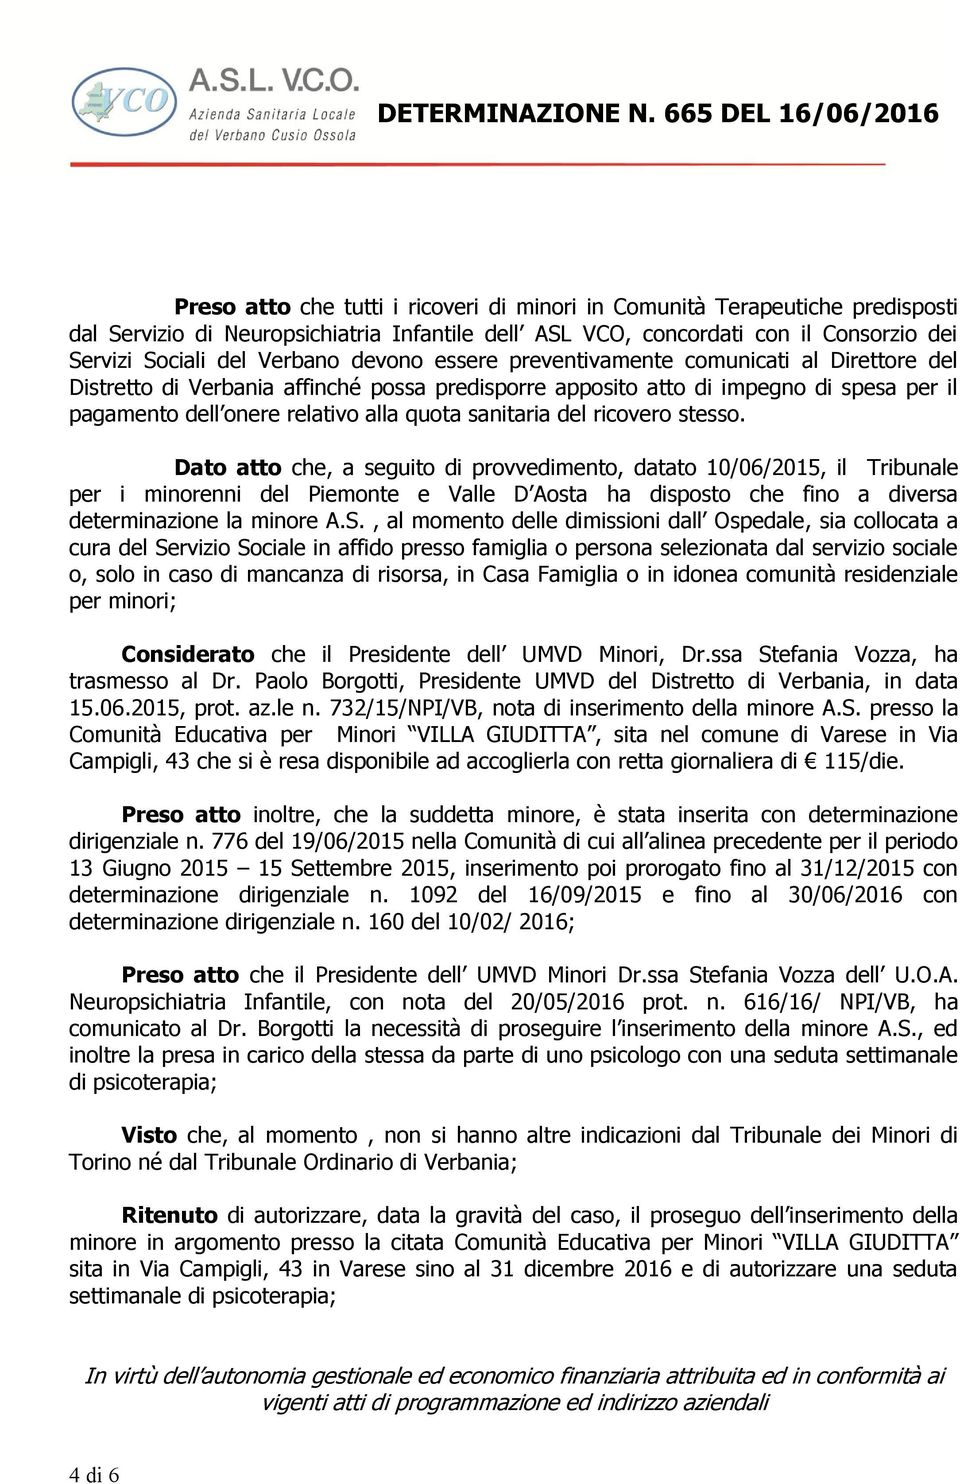 del ricovero stesso. Dato atto che, a seguito di provvedimento, datato 10/06/2015, il Tribunale per i minorenni del Piemonte e Valle D Aosta ha disposto che fino a diversa determinazione la minore A.